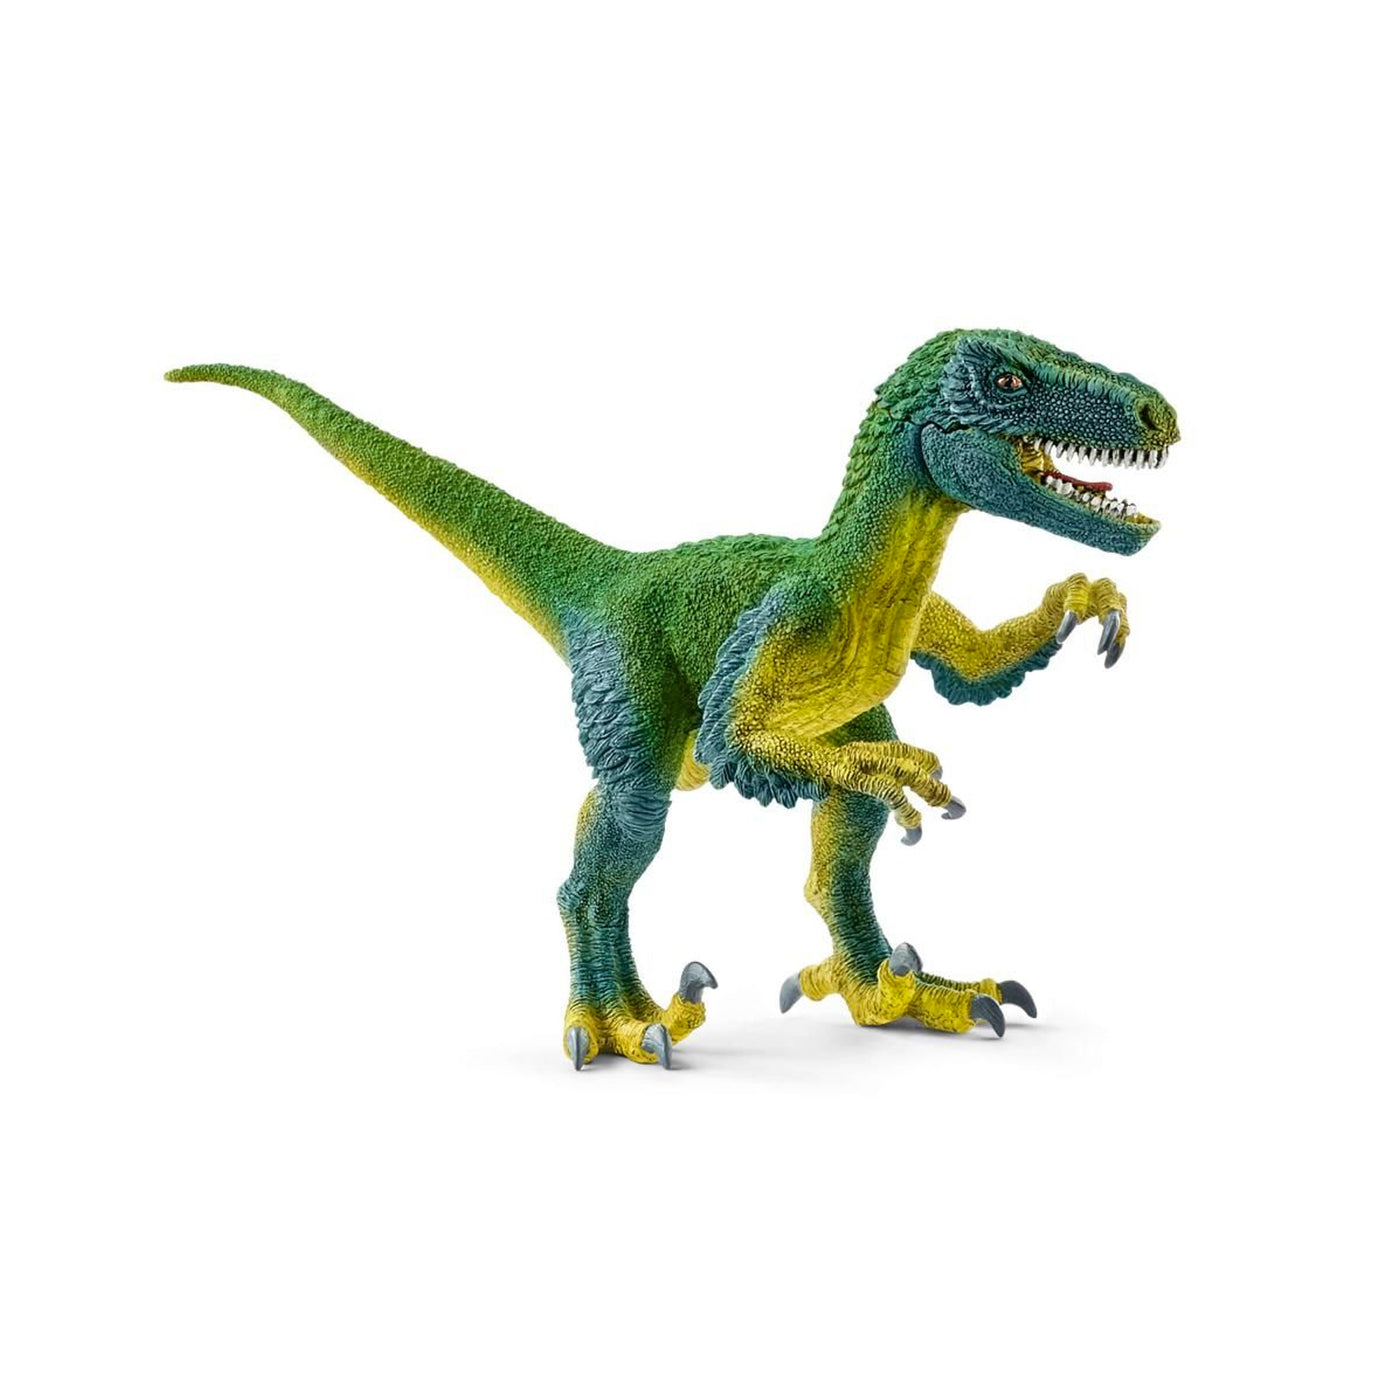 Schleich Dinosaurs Velociraptor Toy Figurine